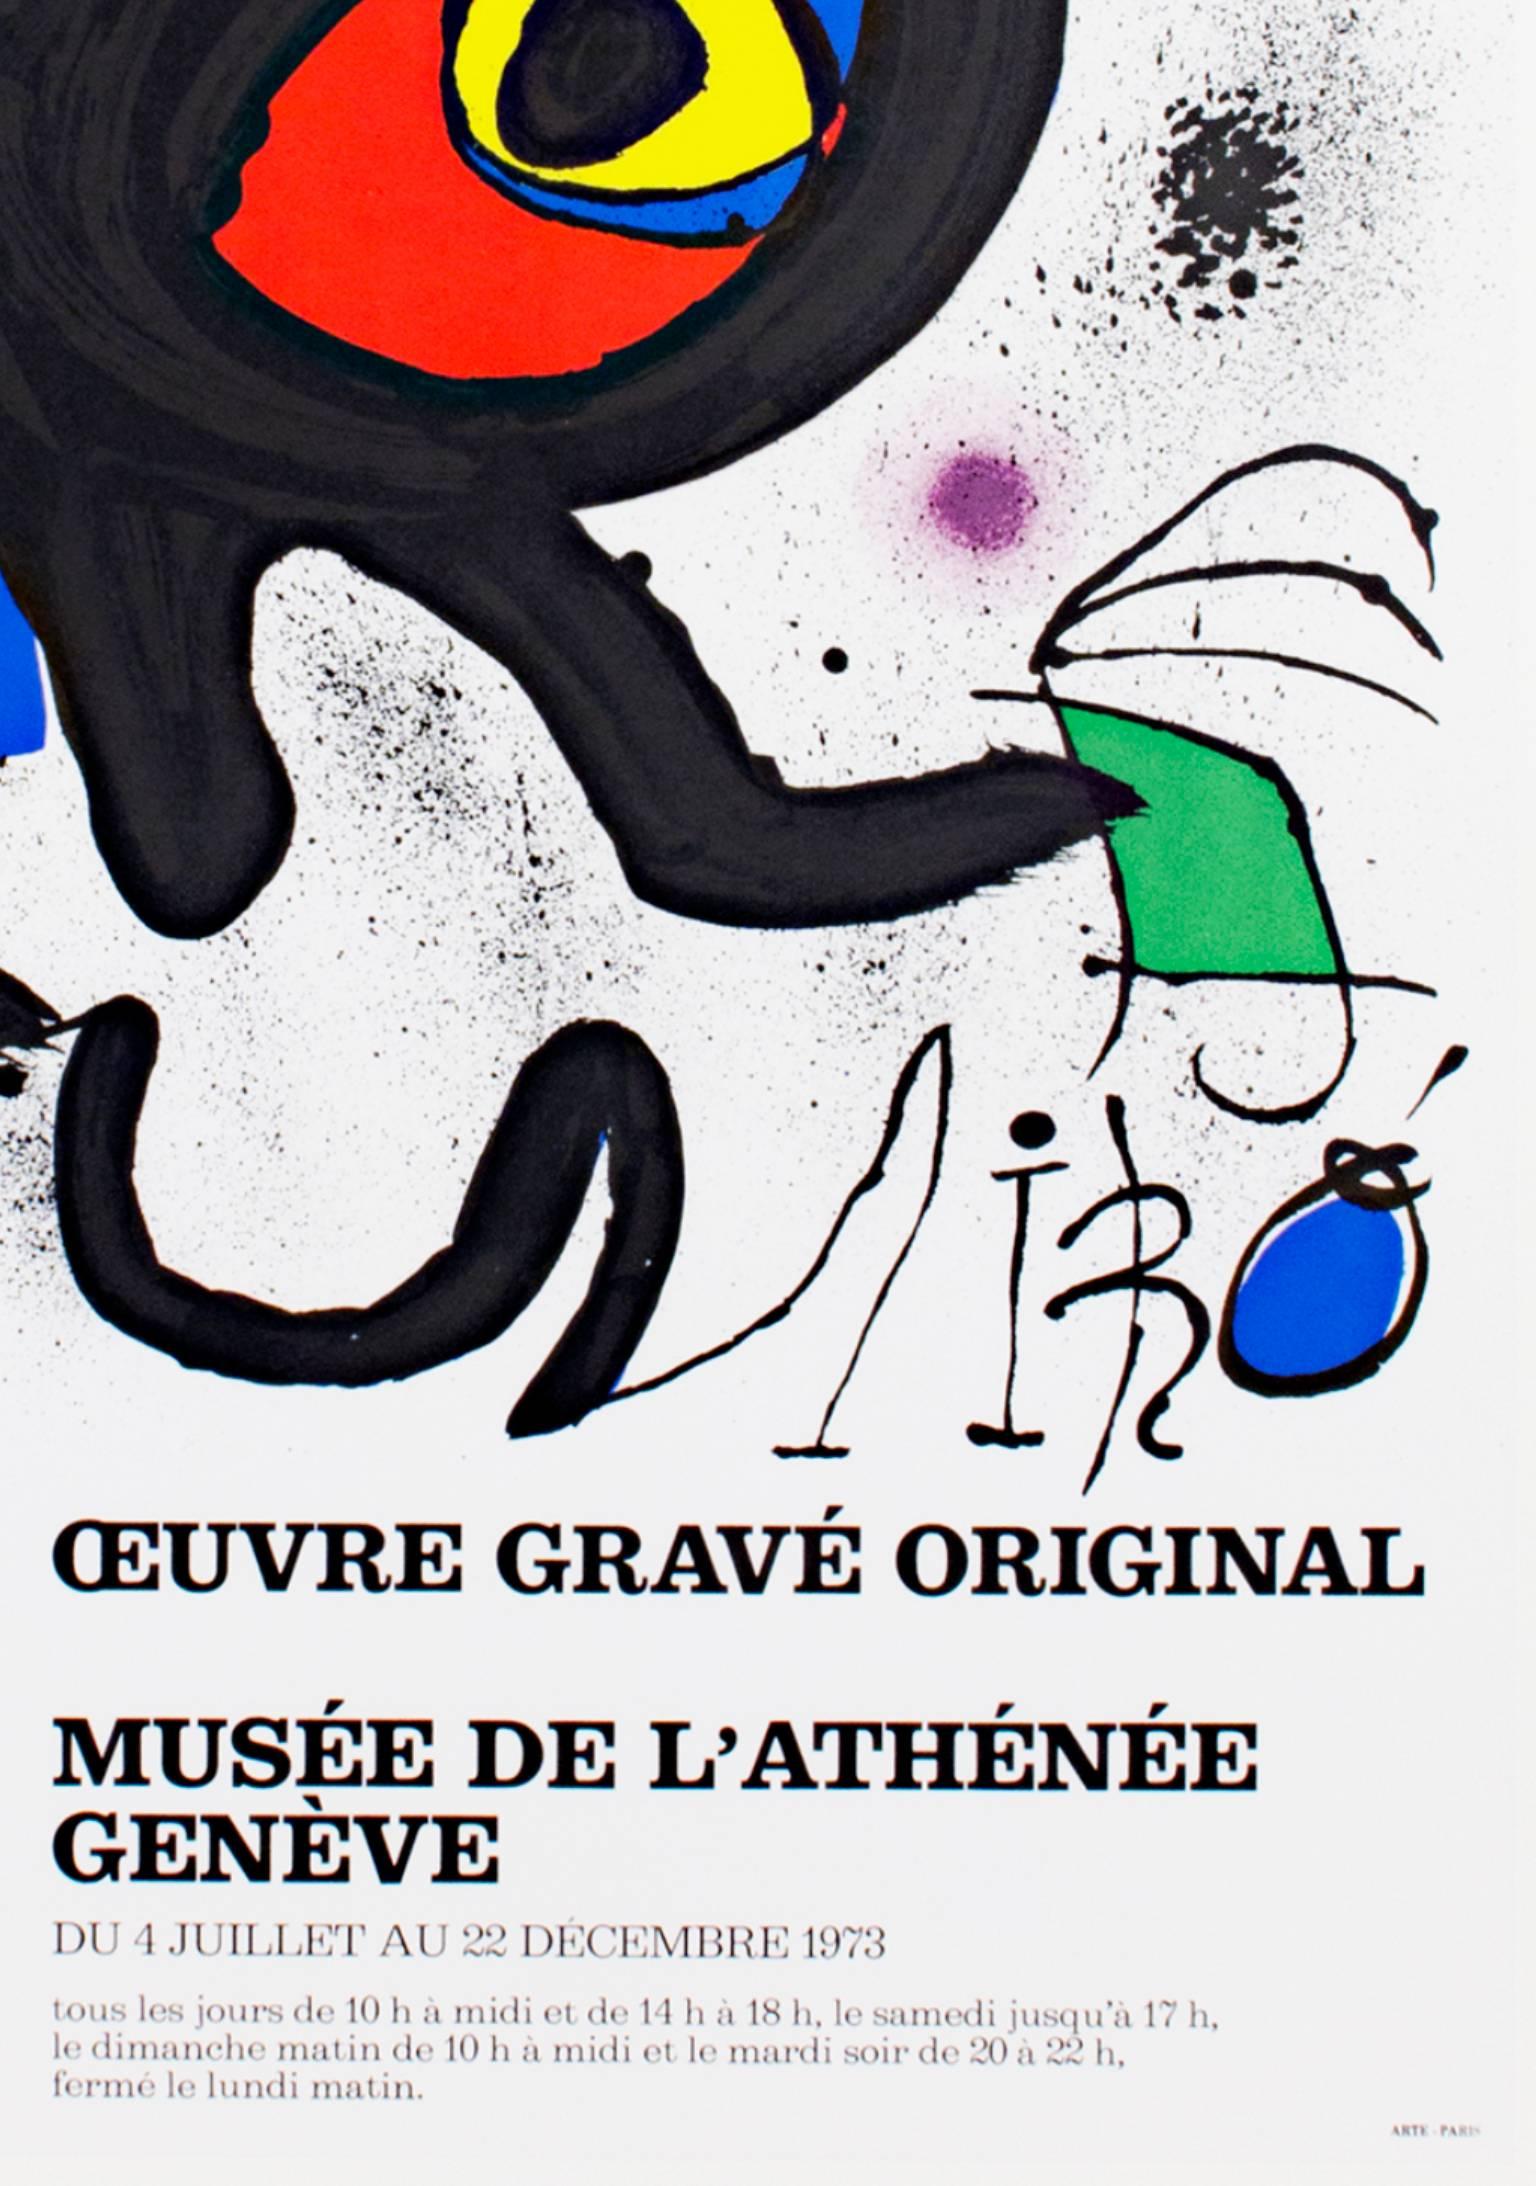 « See De L'Atheneee Ed. of 1000 », affiche originale de lithographie en couleur de Joan Miro - Print de Joan Miró